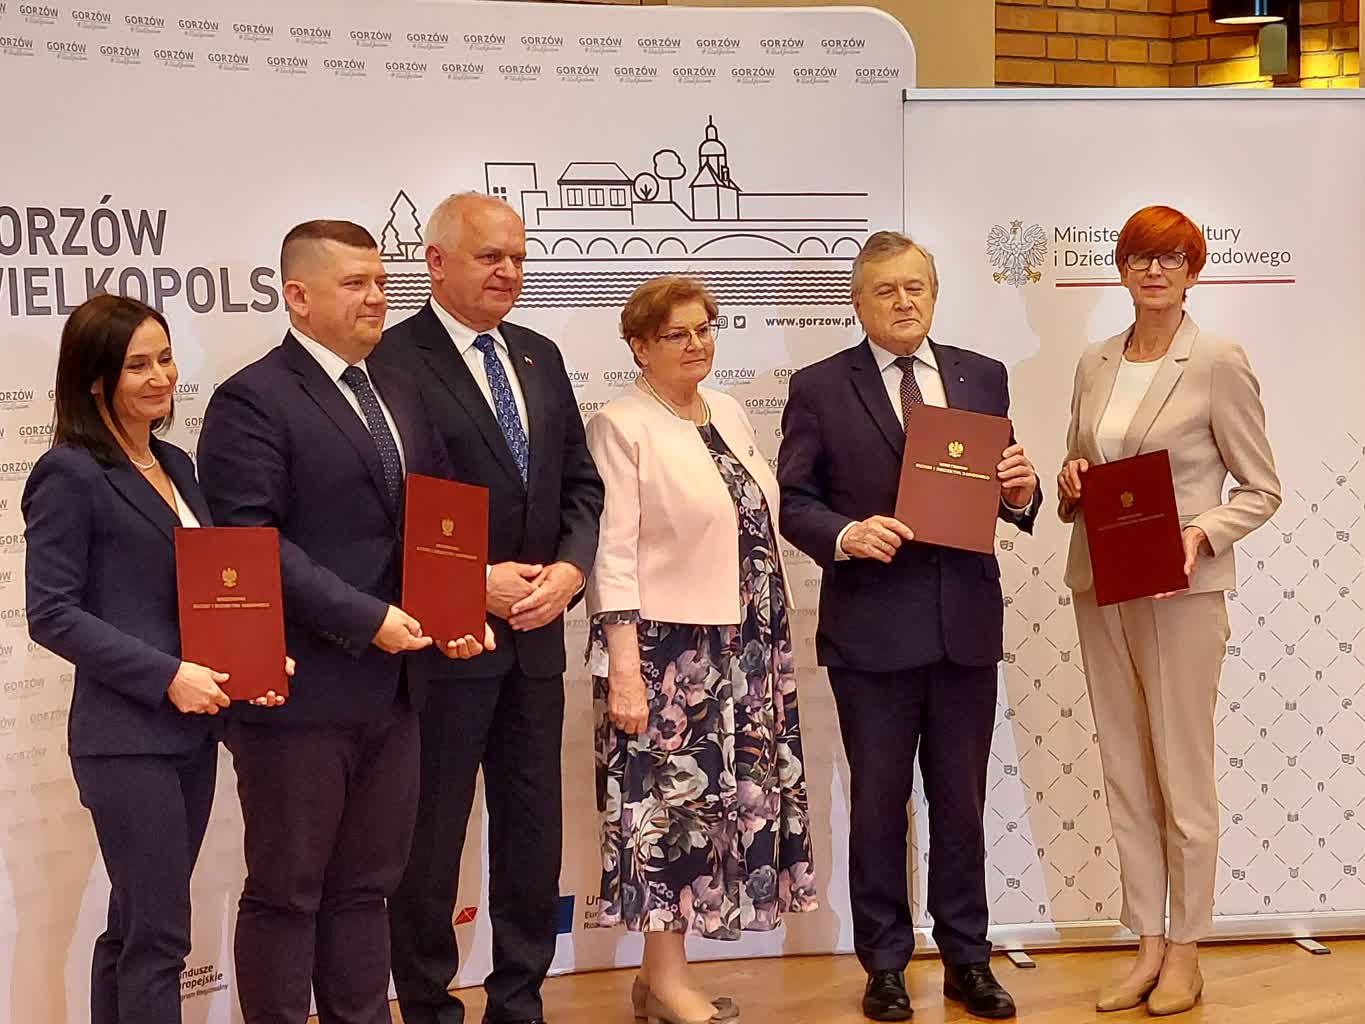 Umowa podpisana. Ministerstwo współprowadzi Gorzowską Filharmonię Radio Zachód - Lubuskie